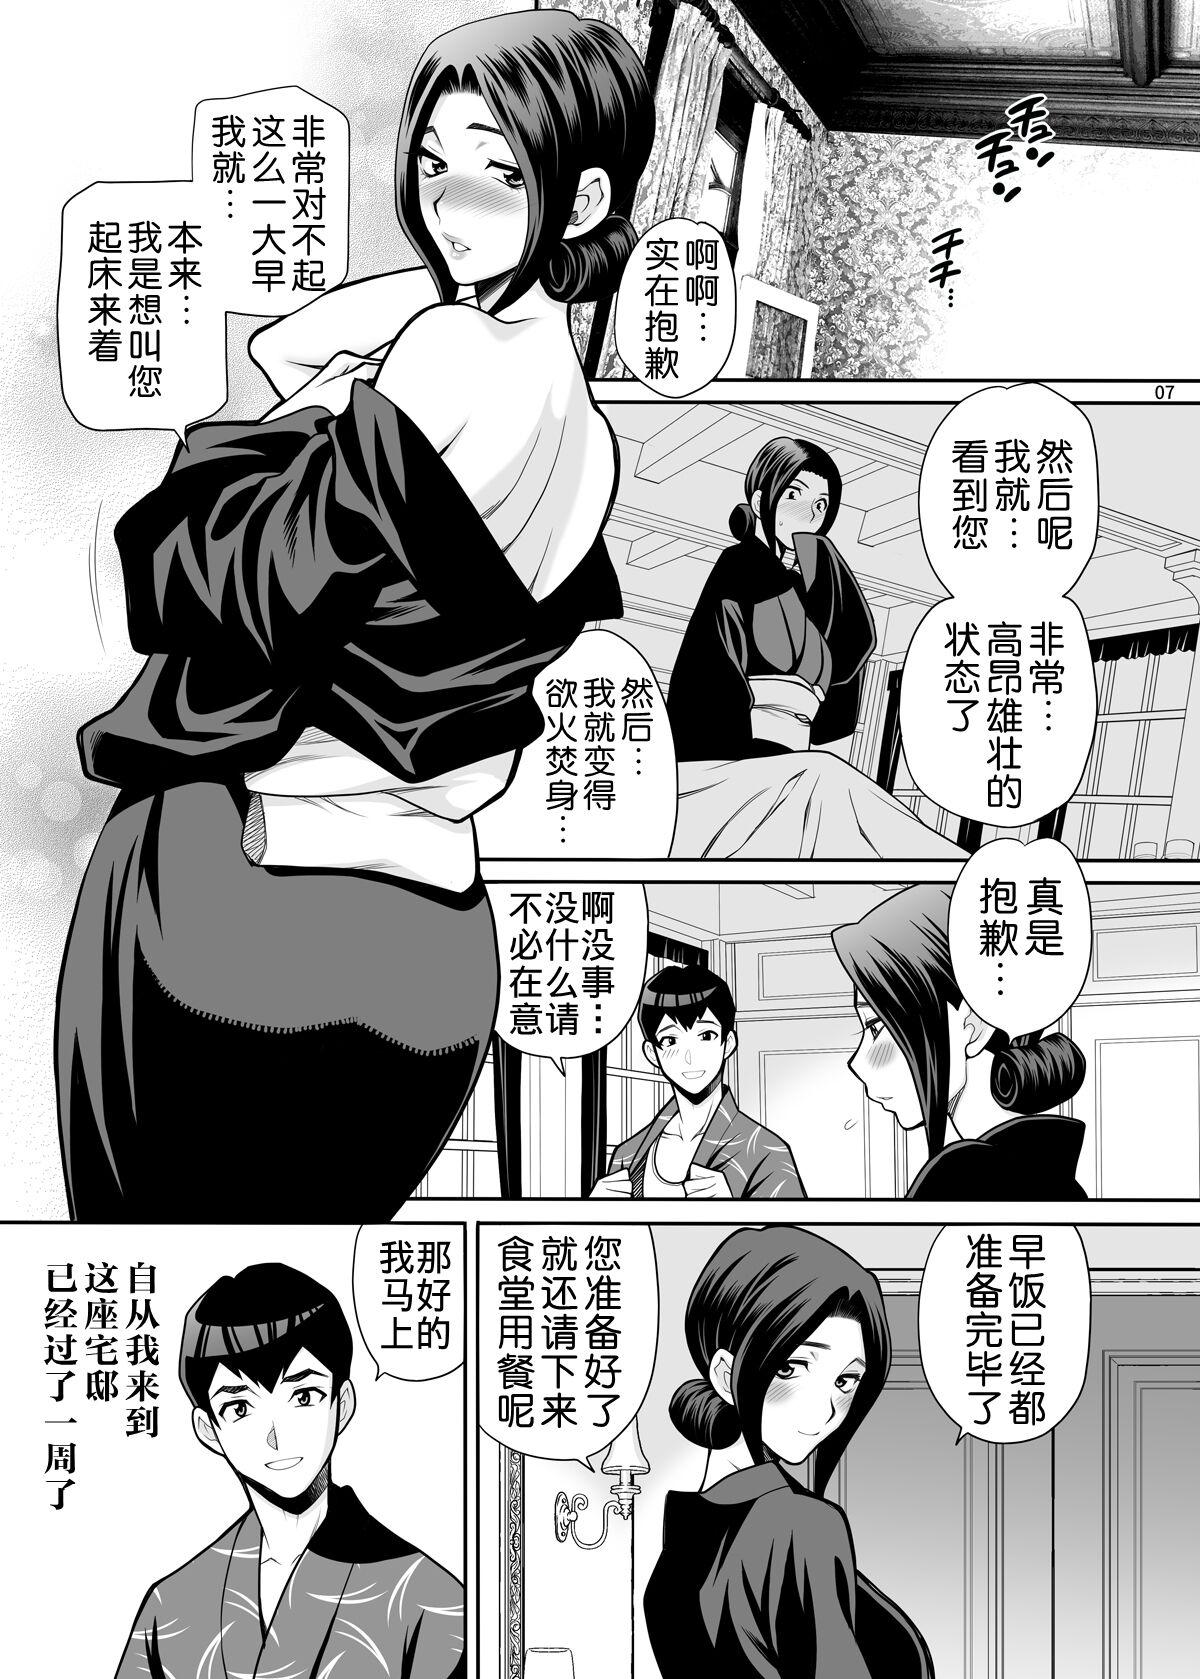 Asian Babes Yukiyanagi no Hon 48 Miboujin Souzoku 2 Subete, Anata no Mono yo... Lez - Page 6